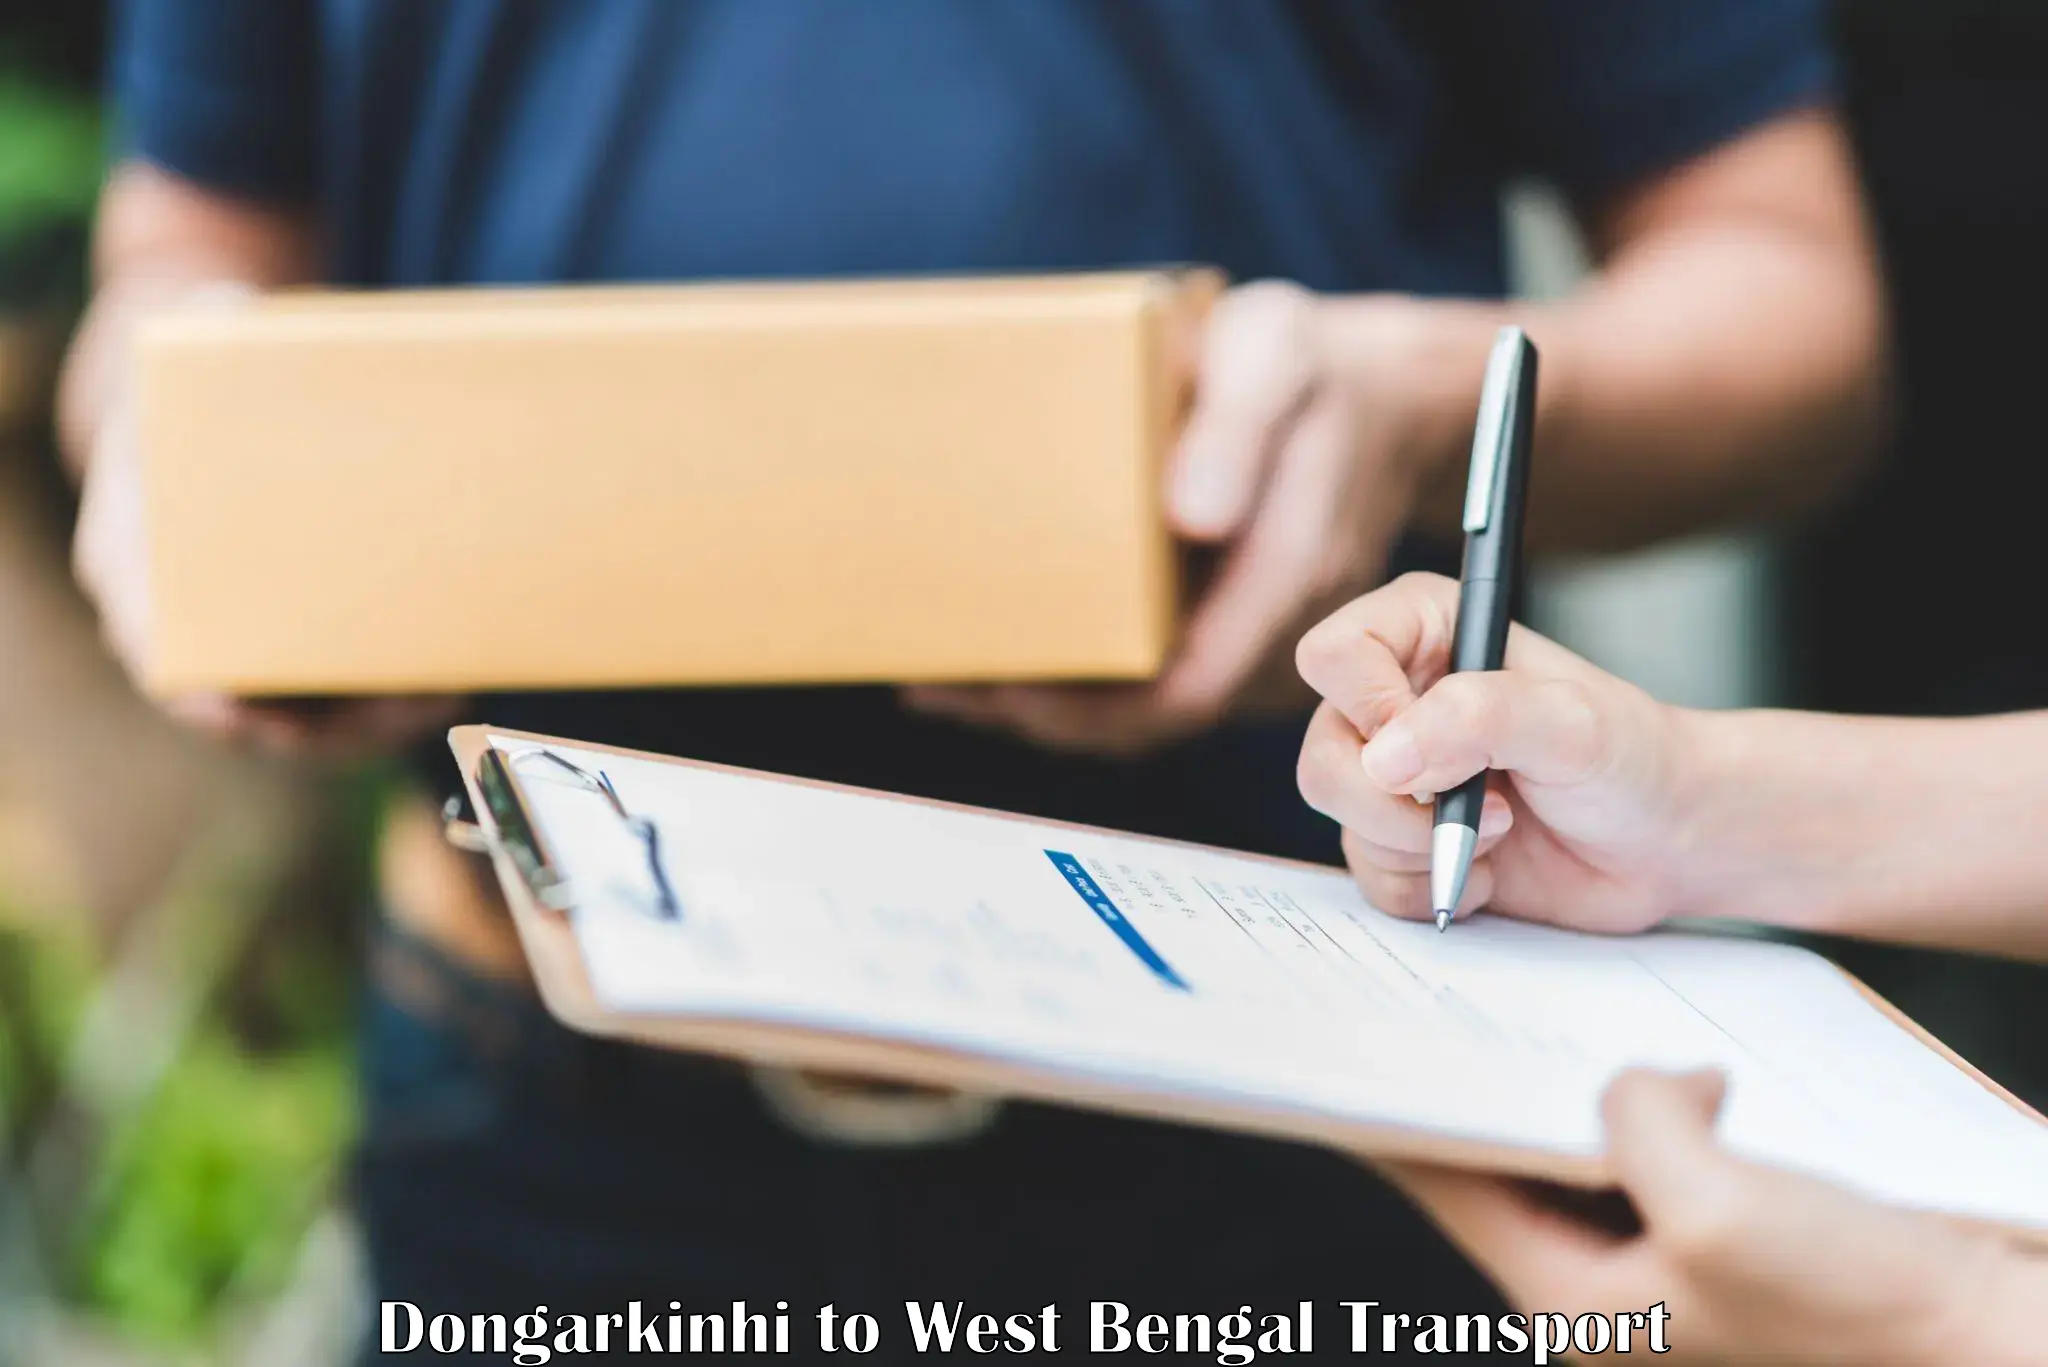 Two wheeler parcel service Dongarkinhi to Kalyani